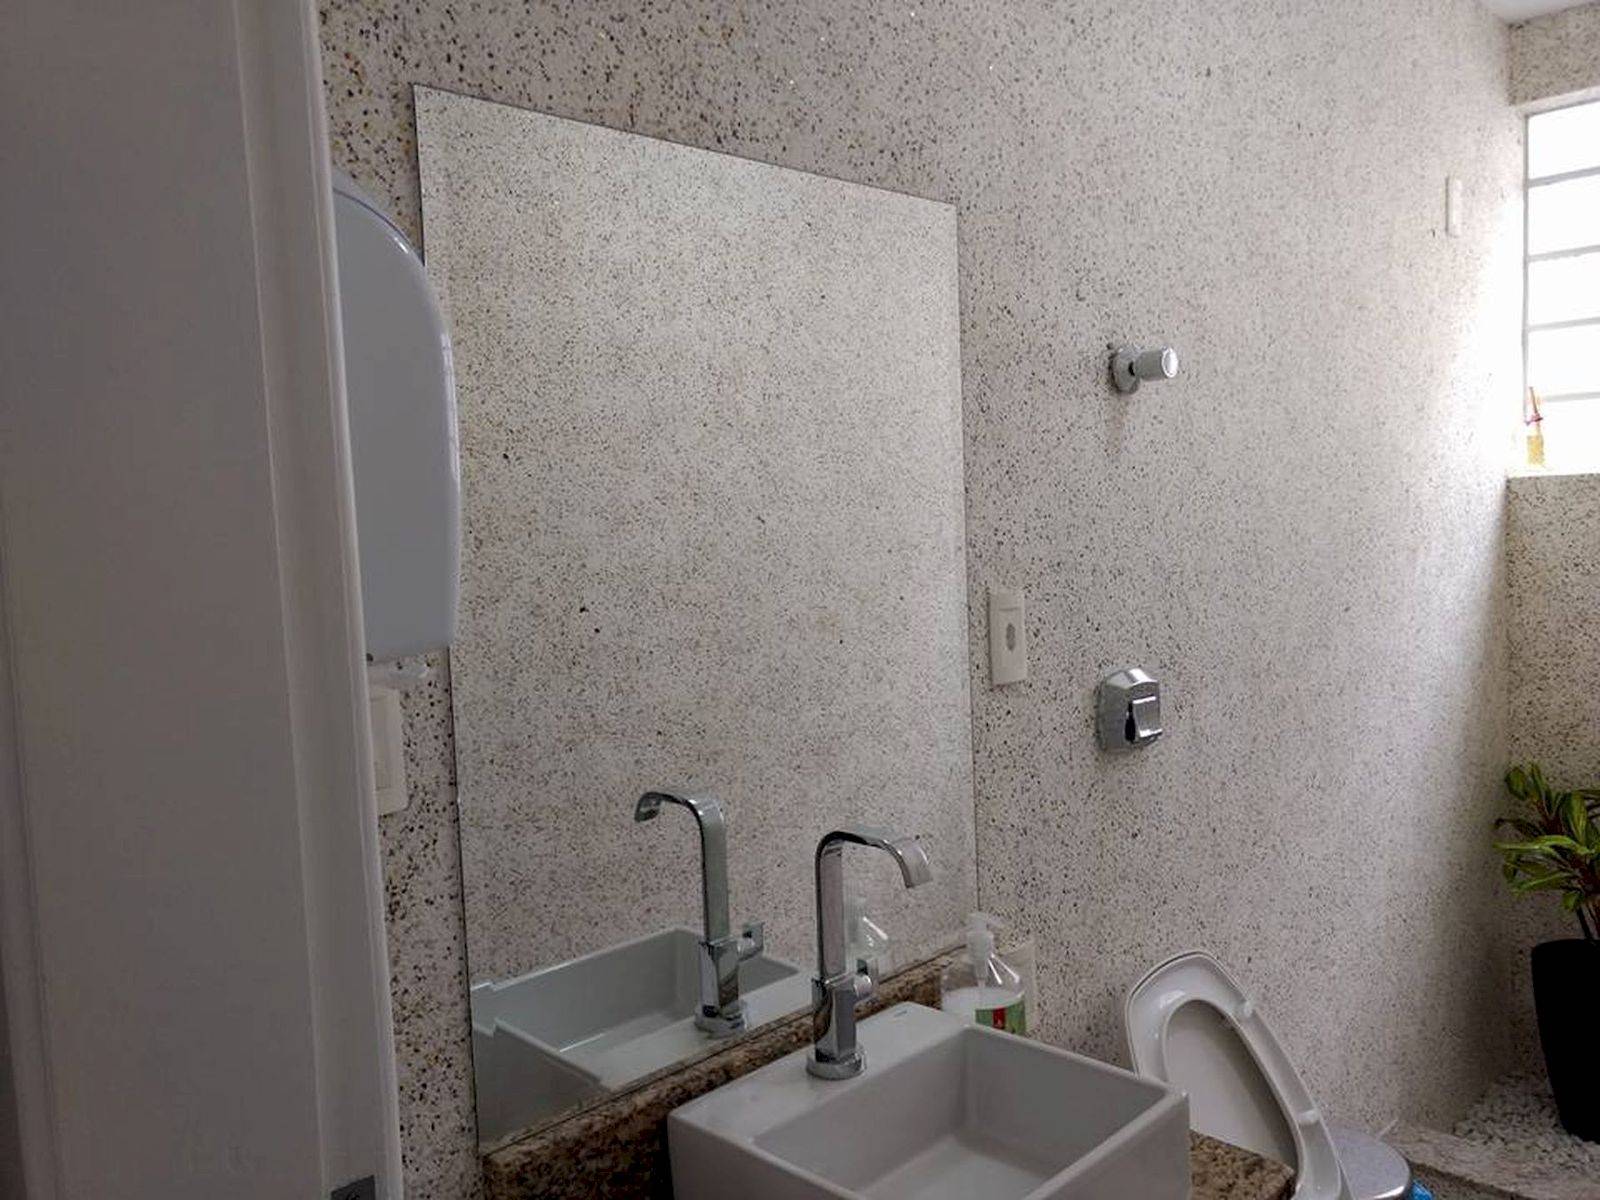 Можно ли клеить жидкие обои в ванной комнате? » строительство дома своими руками, ремонт квартиры и благоустройство дачного участка - moydomik.net